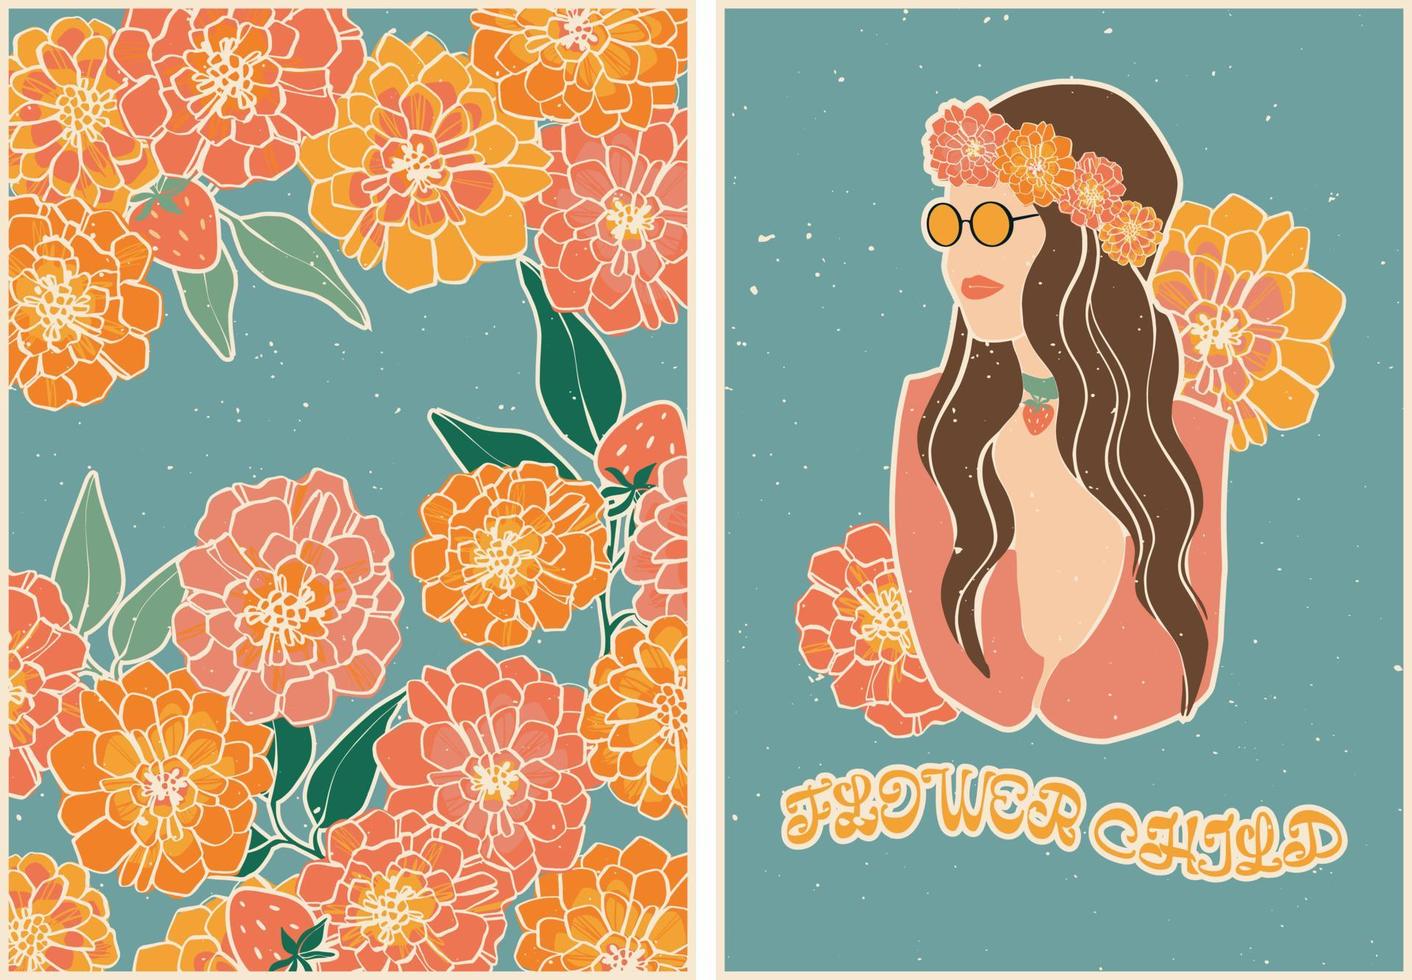 un conjunto de carteles de estilo retro con flores, fresas y una chica con una corona floral y gafas de sol. estilo retro de la vendimia. 60s, 70s, hippies. conjunto de postales, diseño de carteles. vector